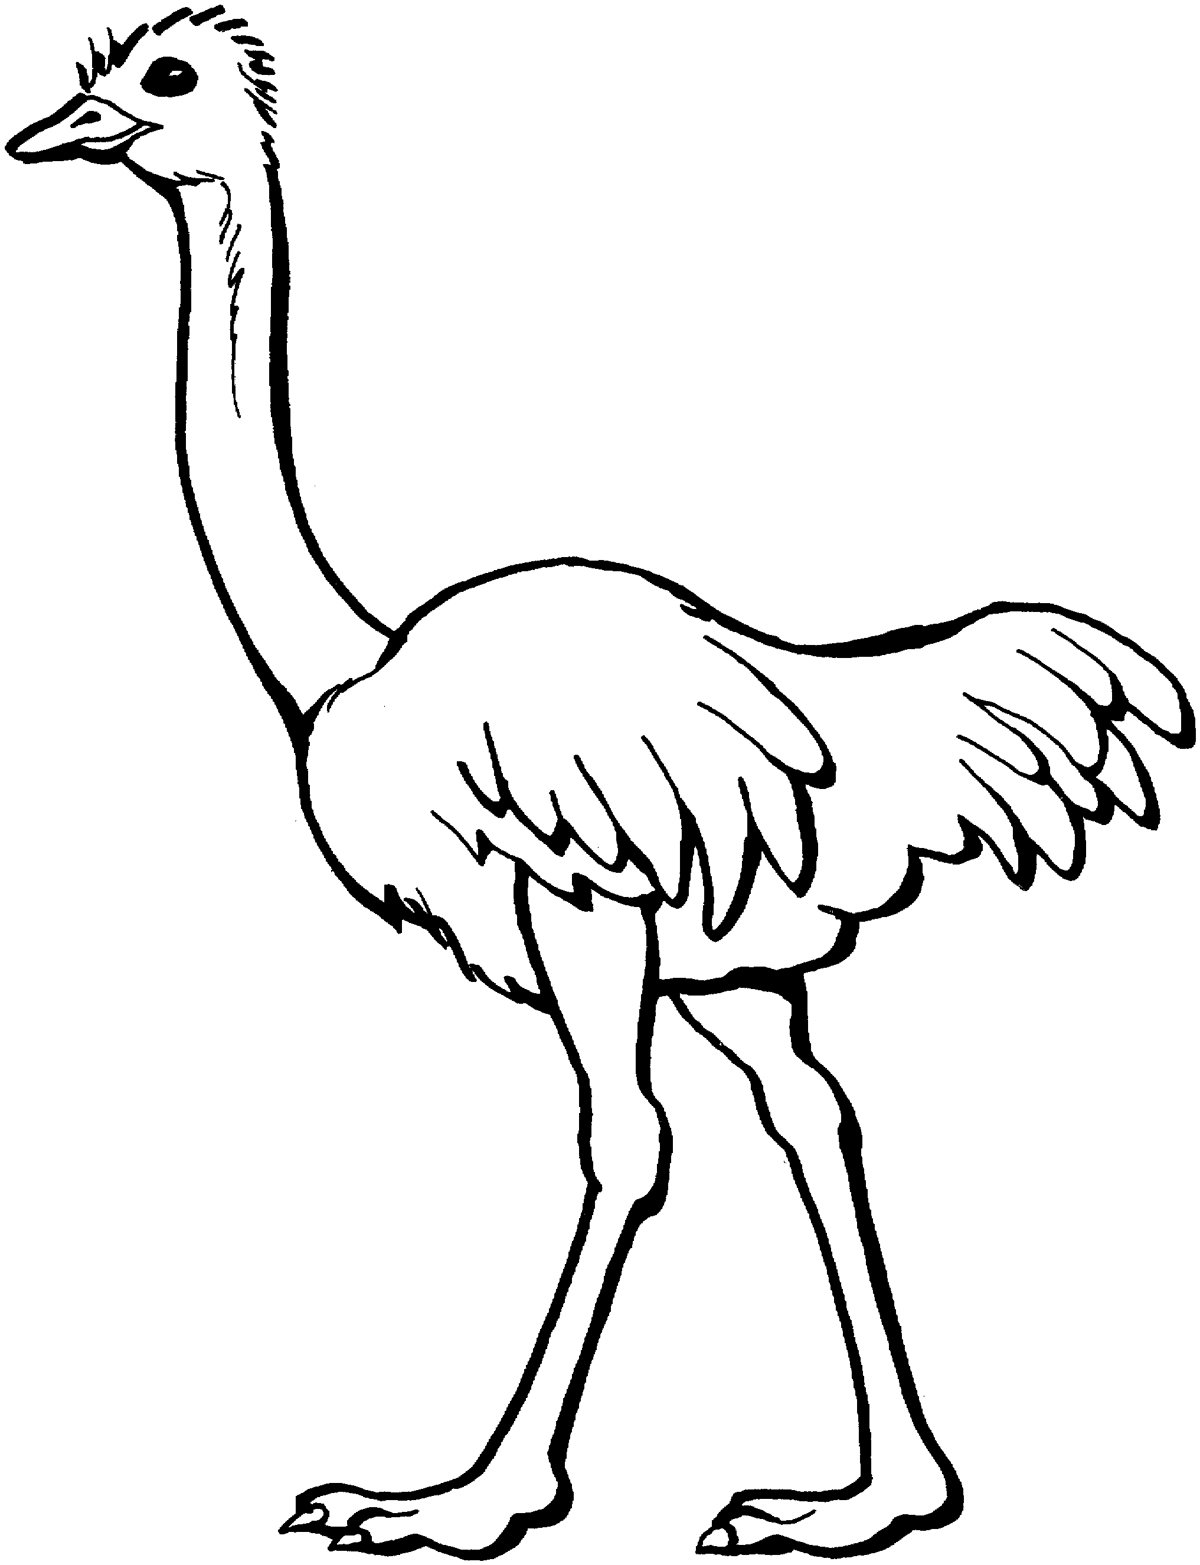 Ostrich раскраска для детей